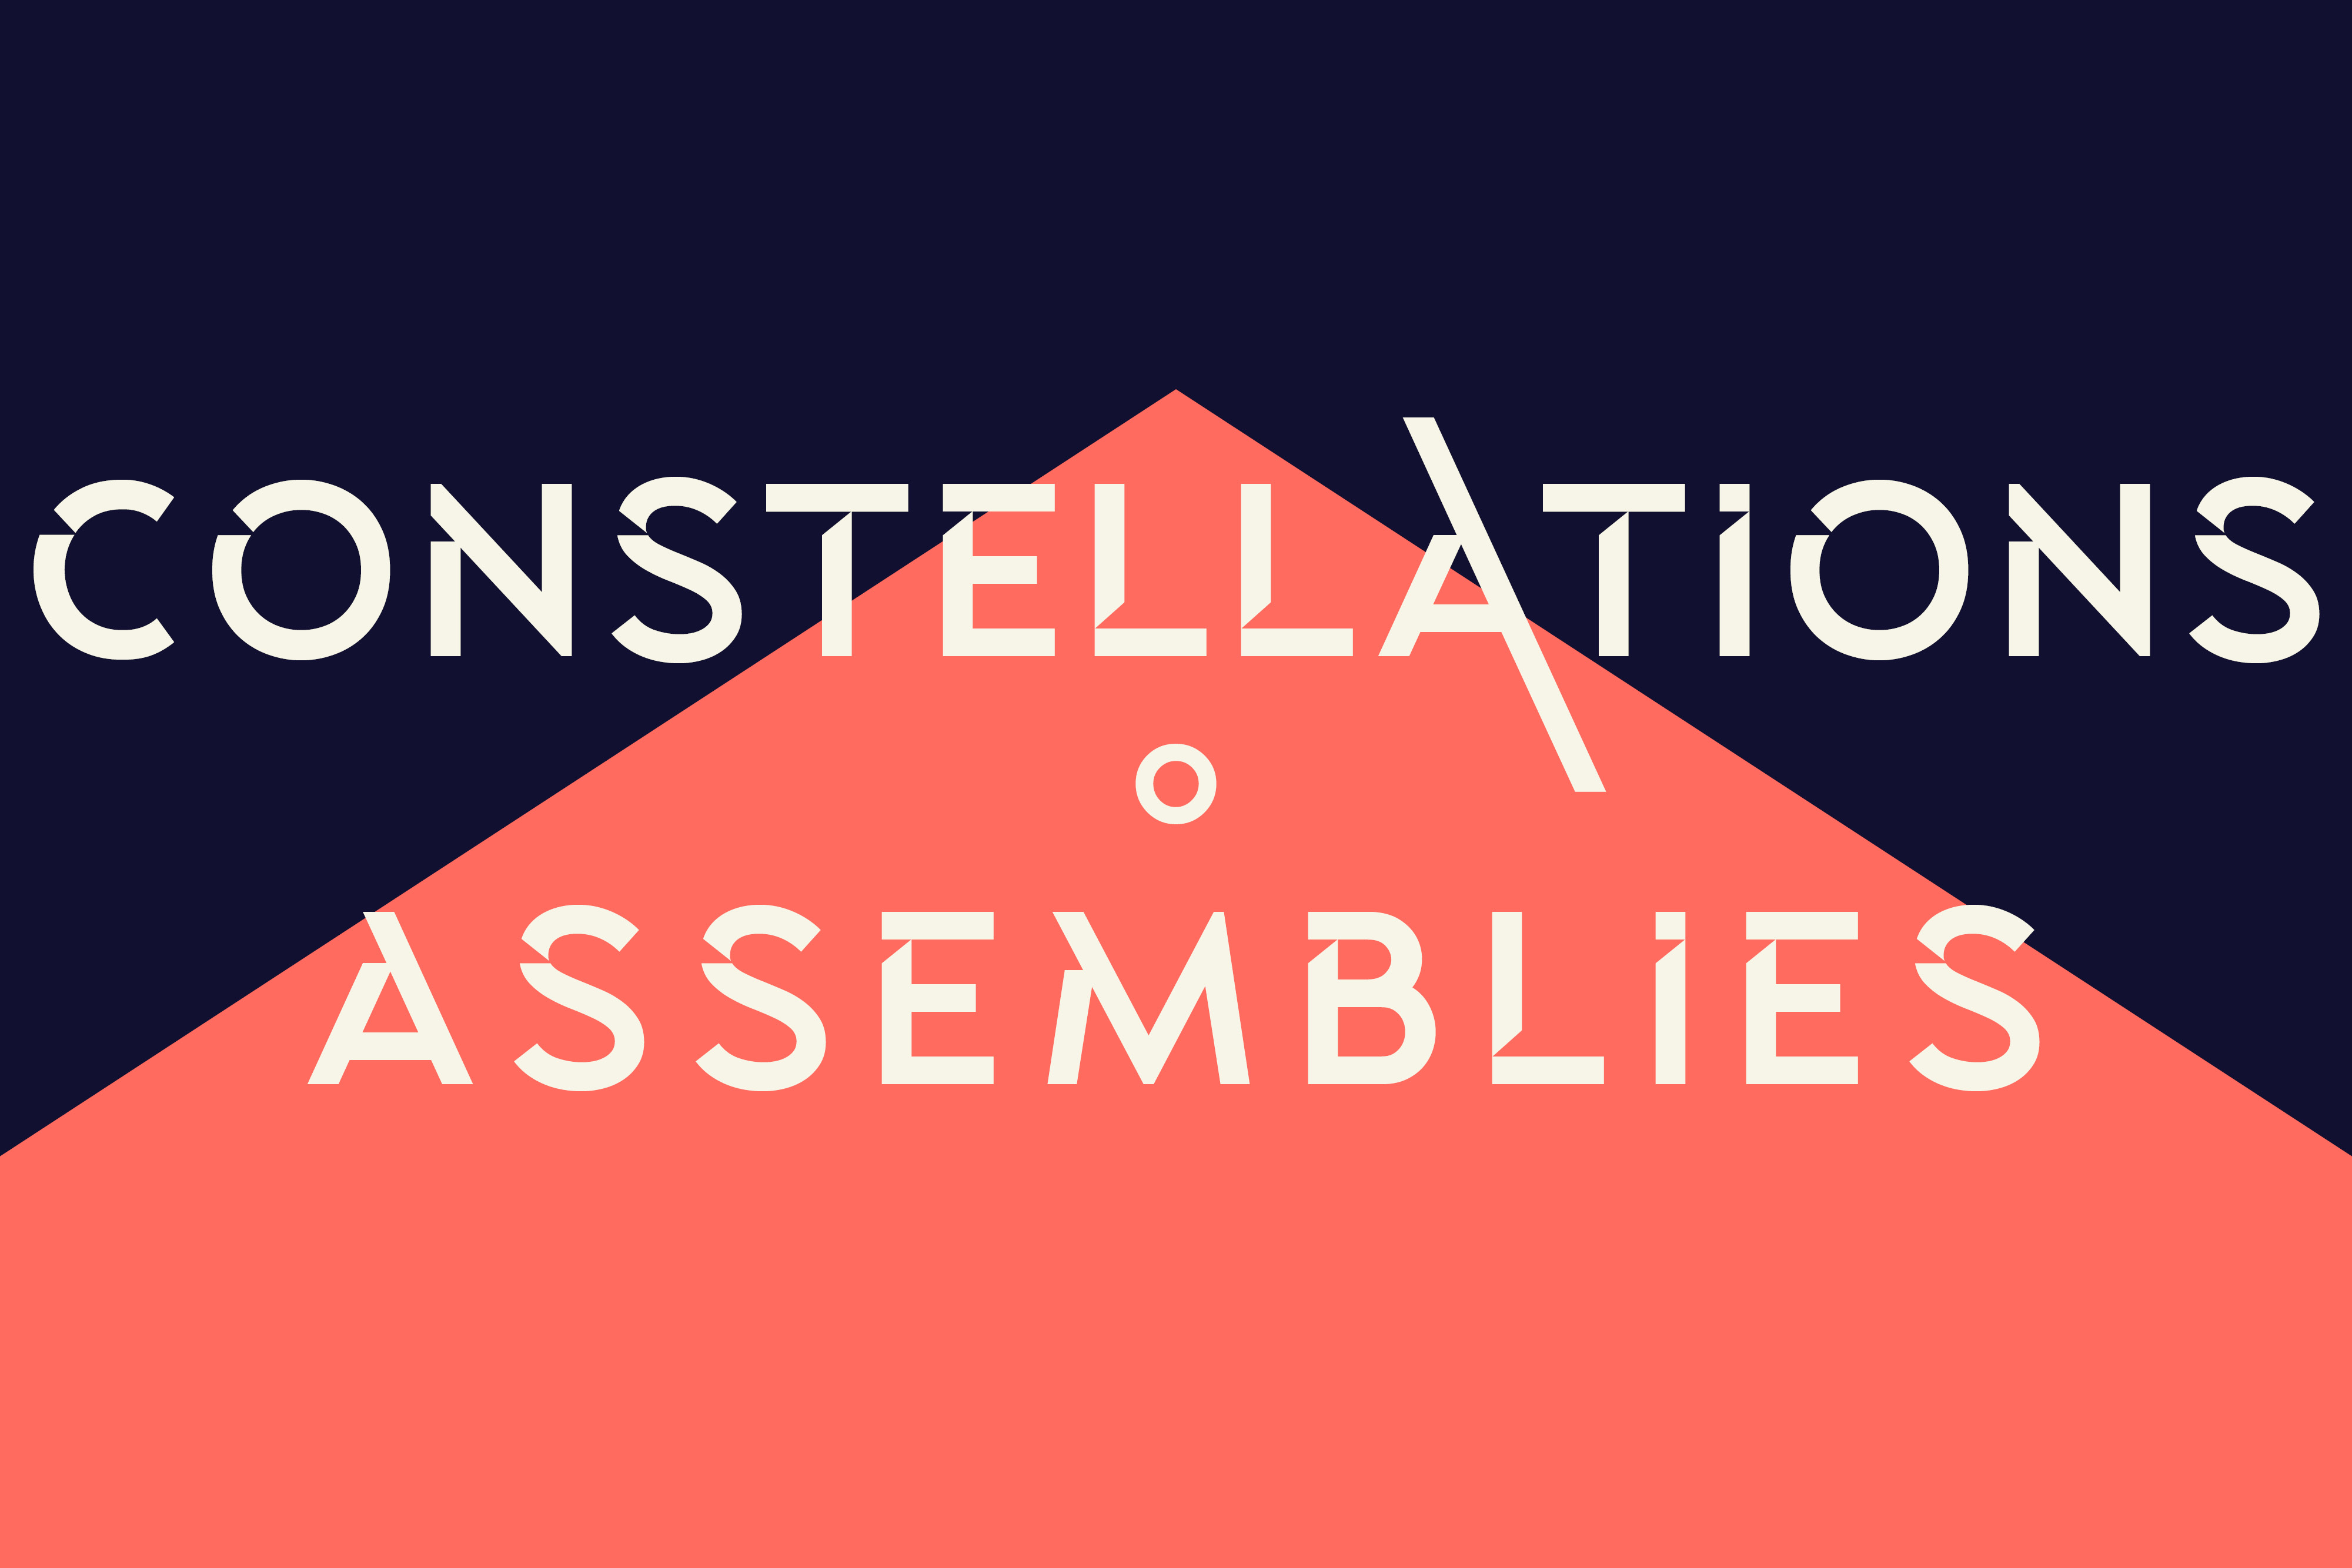 Constellations ° Assemblies